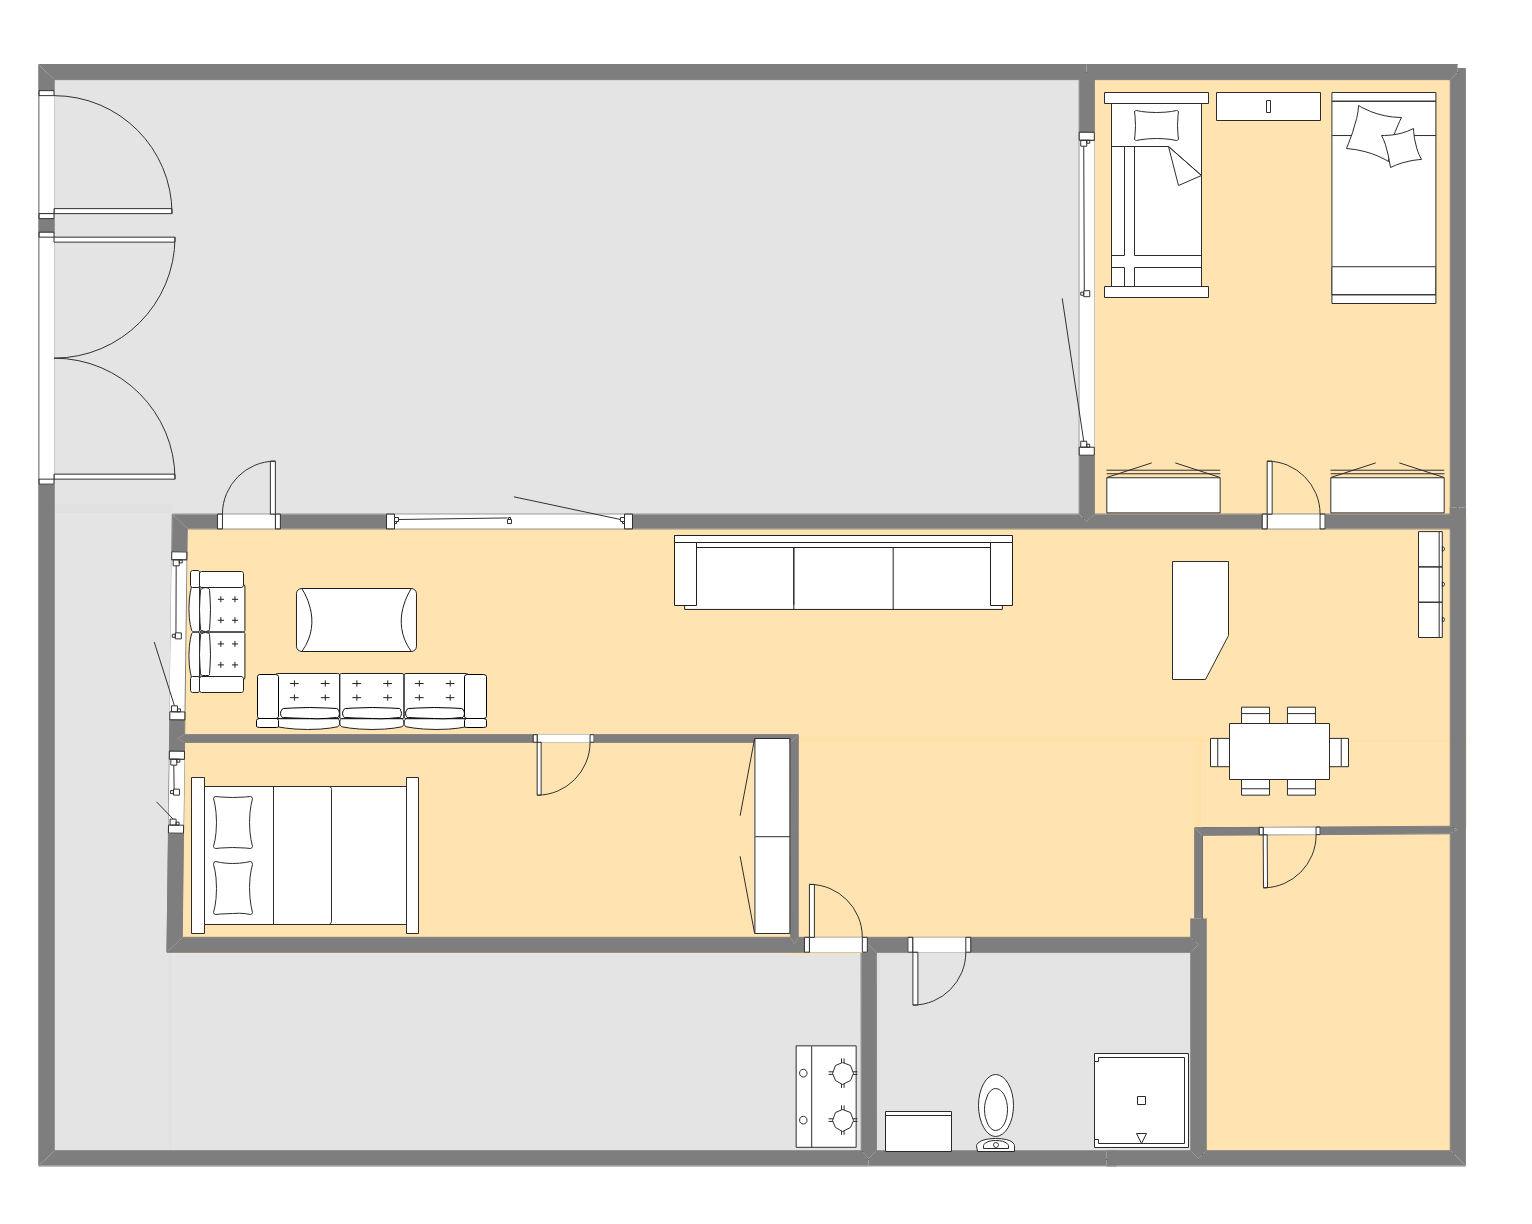 General 2D Floor Plan